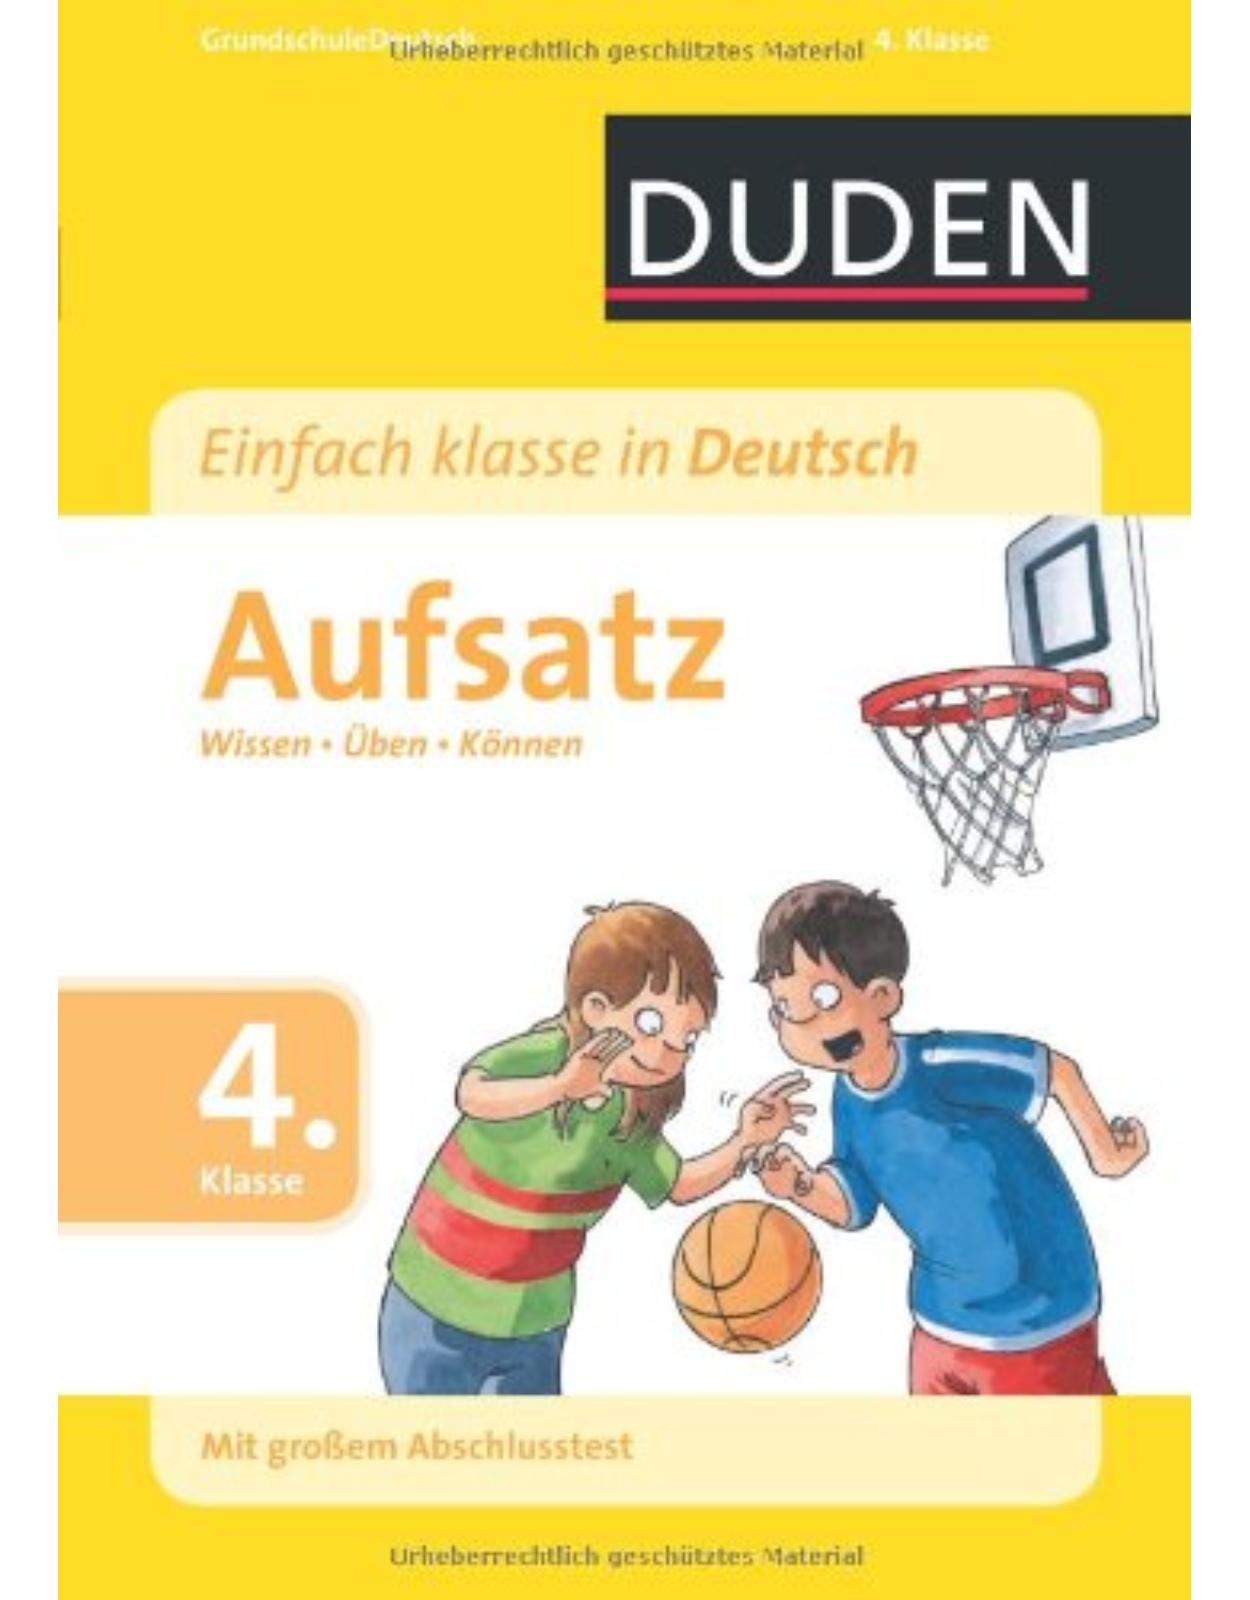 Duden - Einfach klasse in Deutsch Aufsatz 4. Klasse: Wissen - Üben - Können